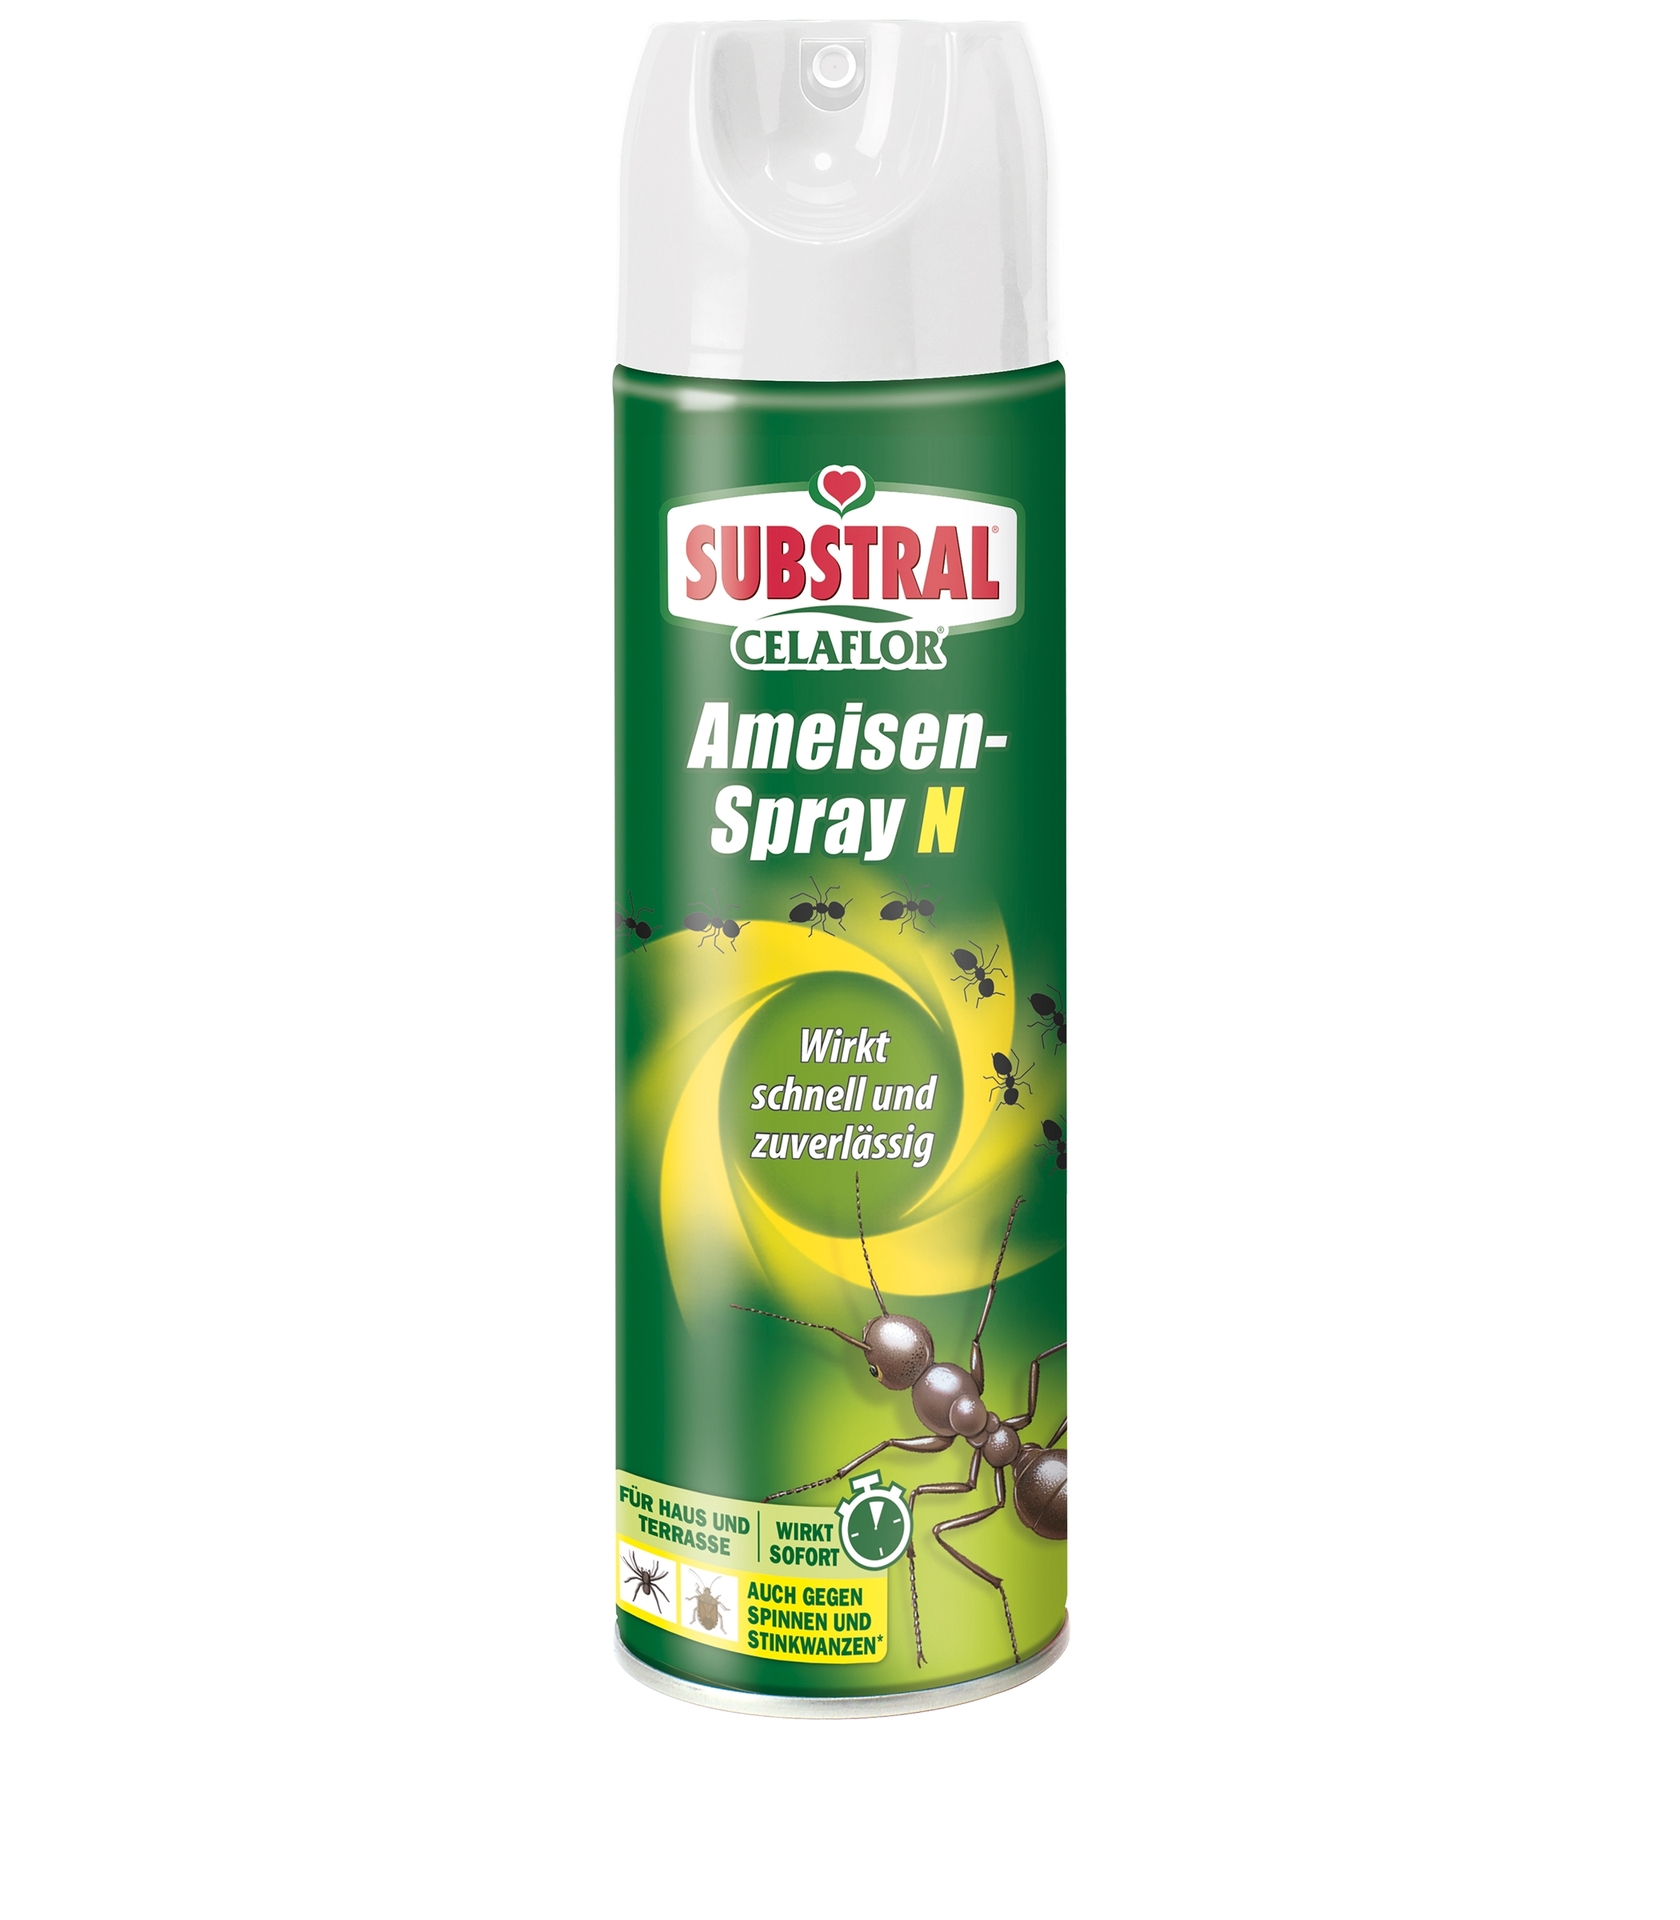 Ameisen-Spray N